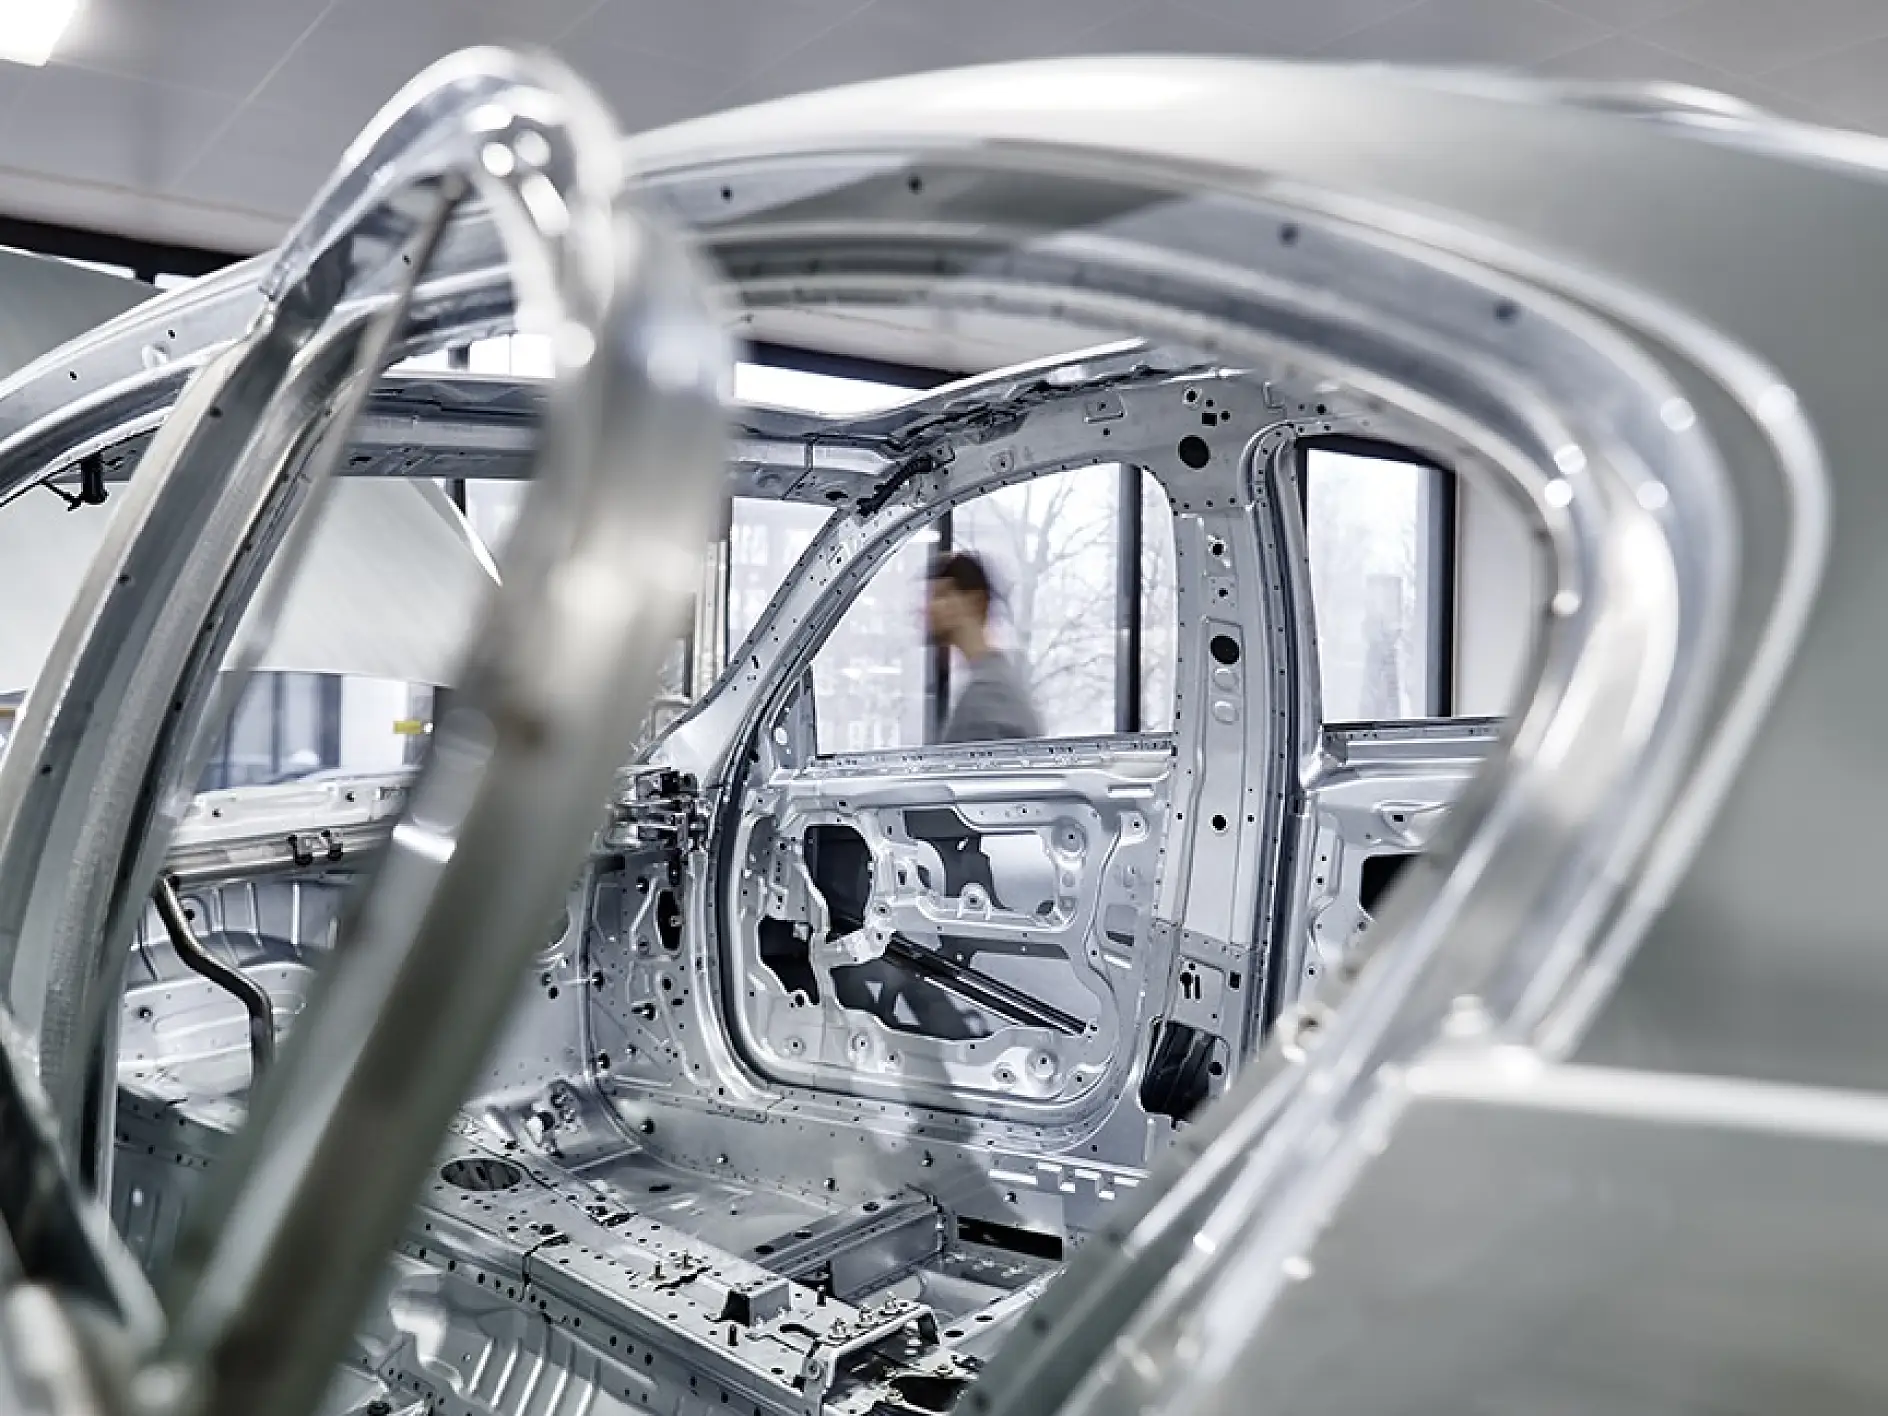 Cung cấp các giải pháp kết dính cho vật liệu ứng dụng bít lỗ của bạn trong quy trình sản xuất xe hơi